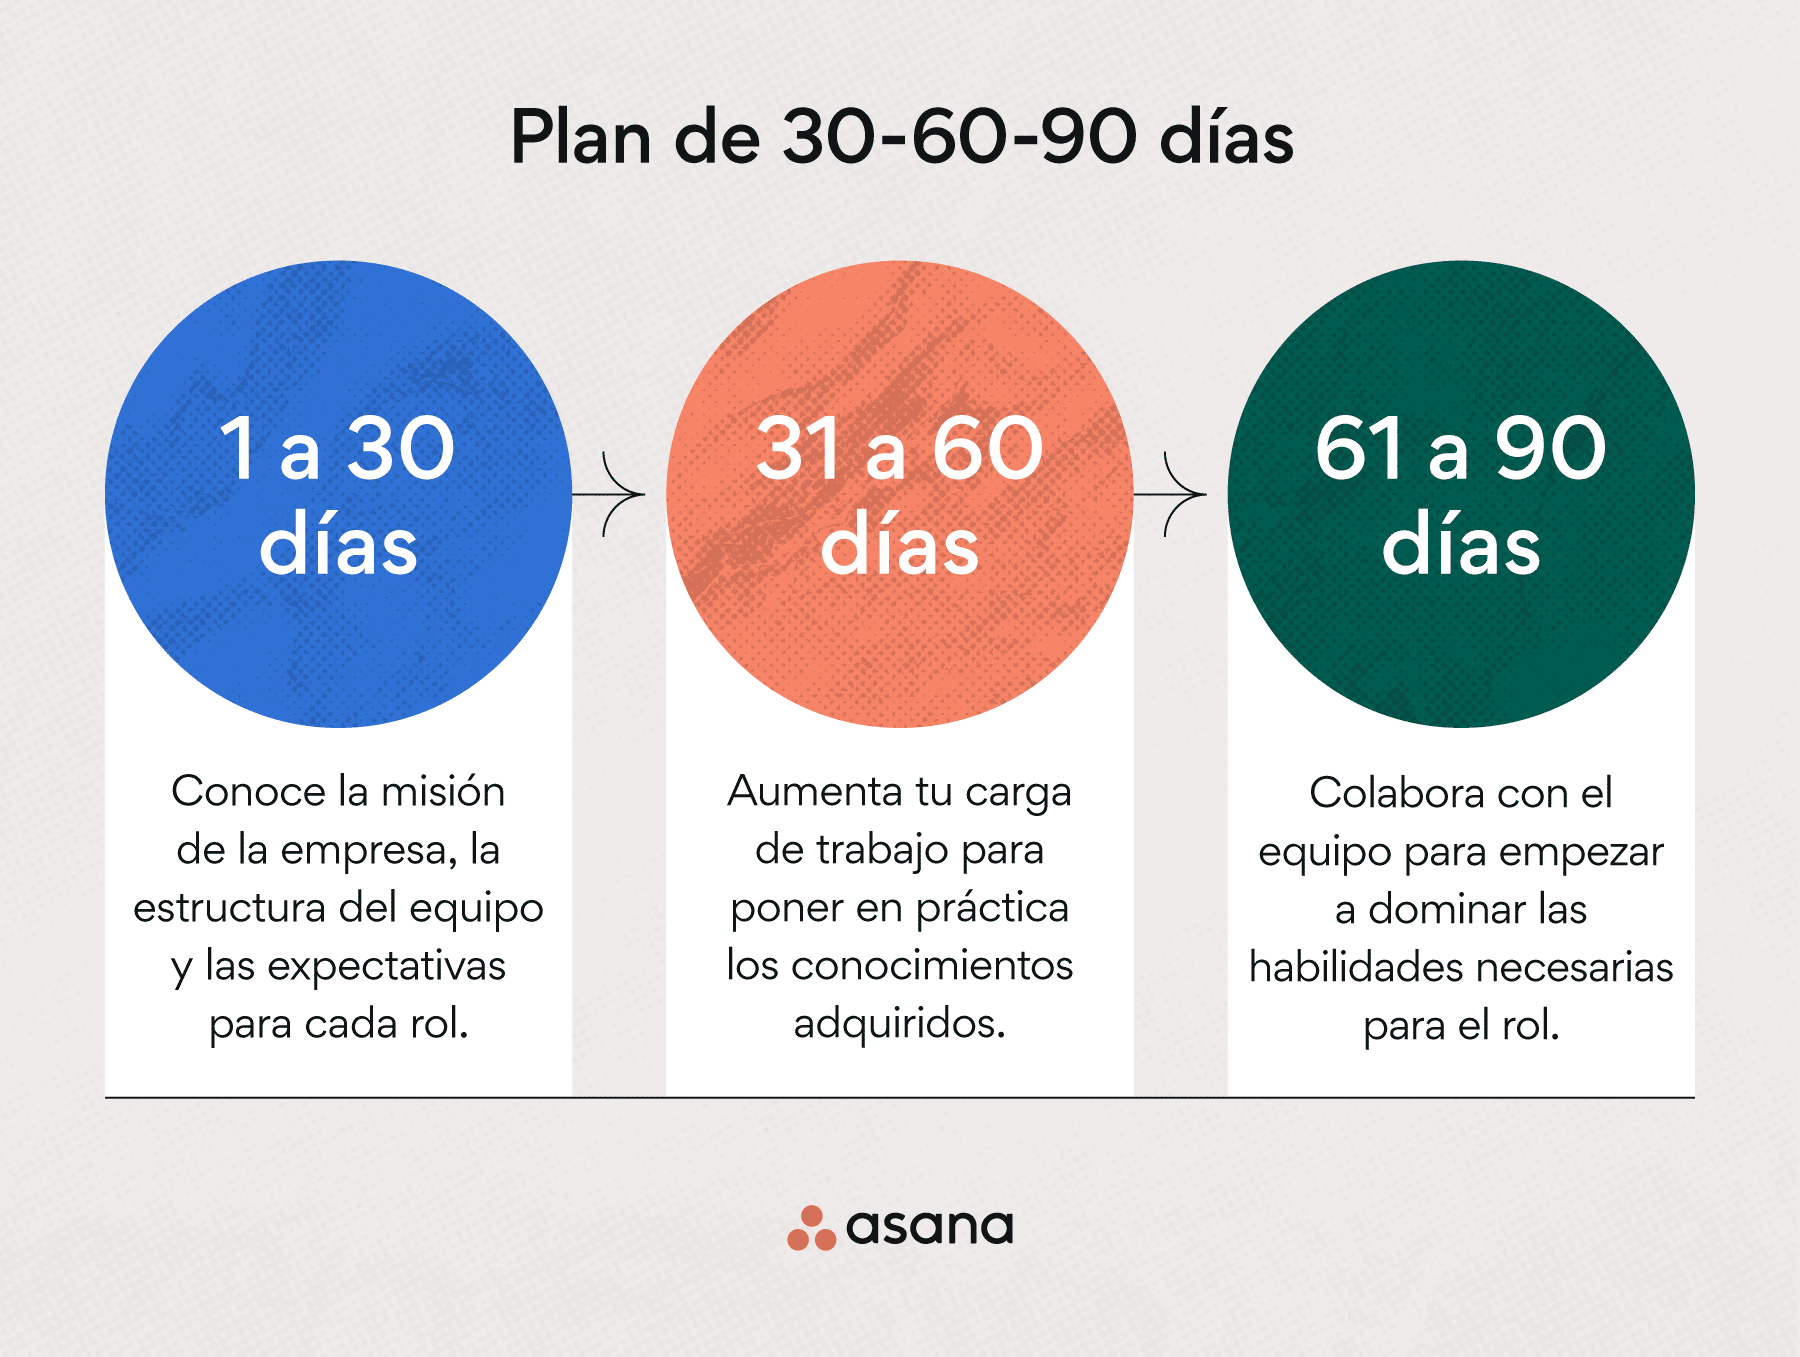 ¿Qué es un plan de 30-60-90 días?